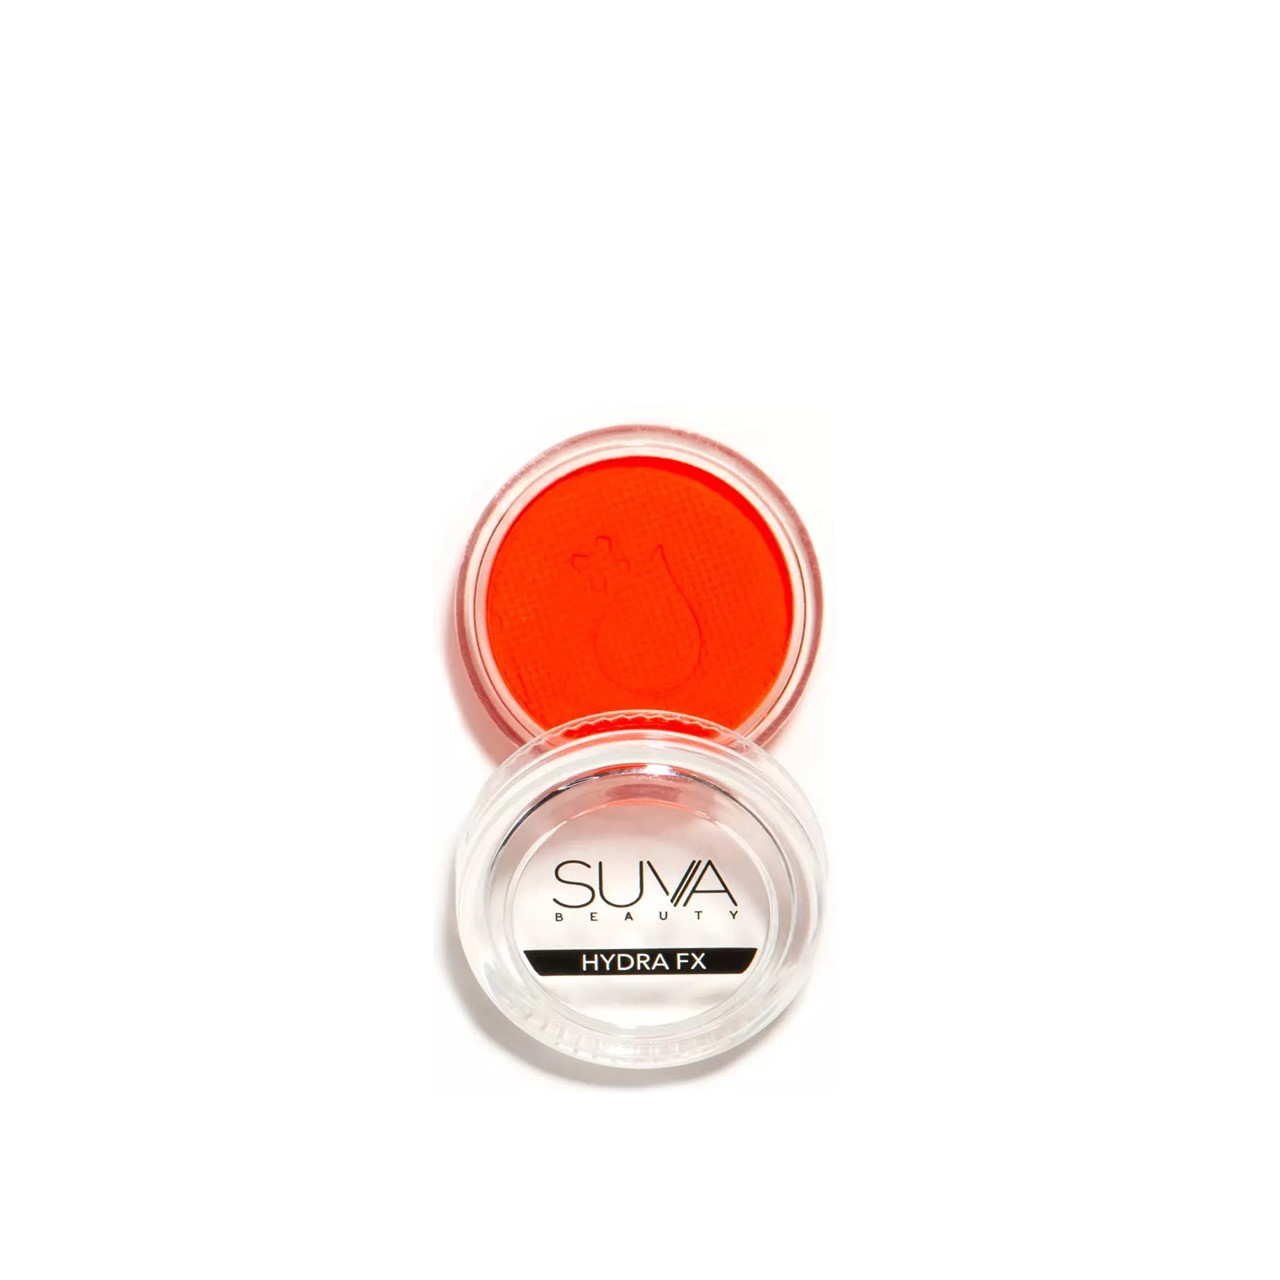 SUVA Beauty Hydra FX Acid Trip UV Body Art 10g (0.35oz)